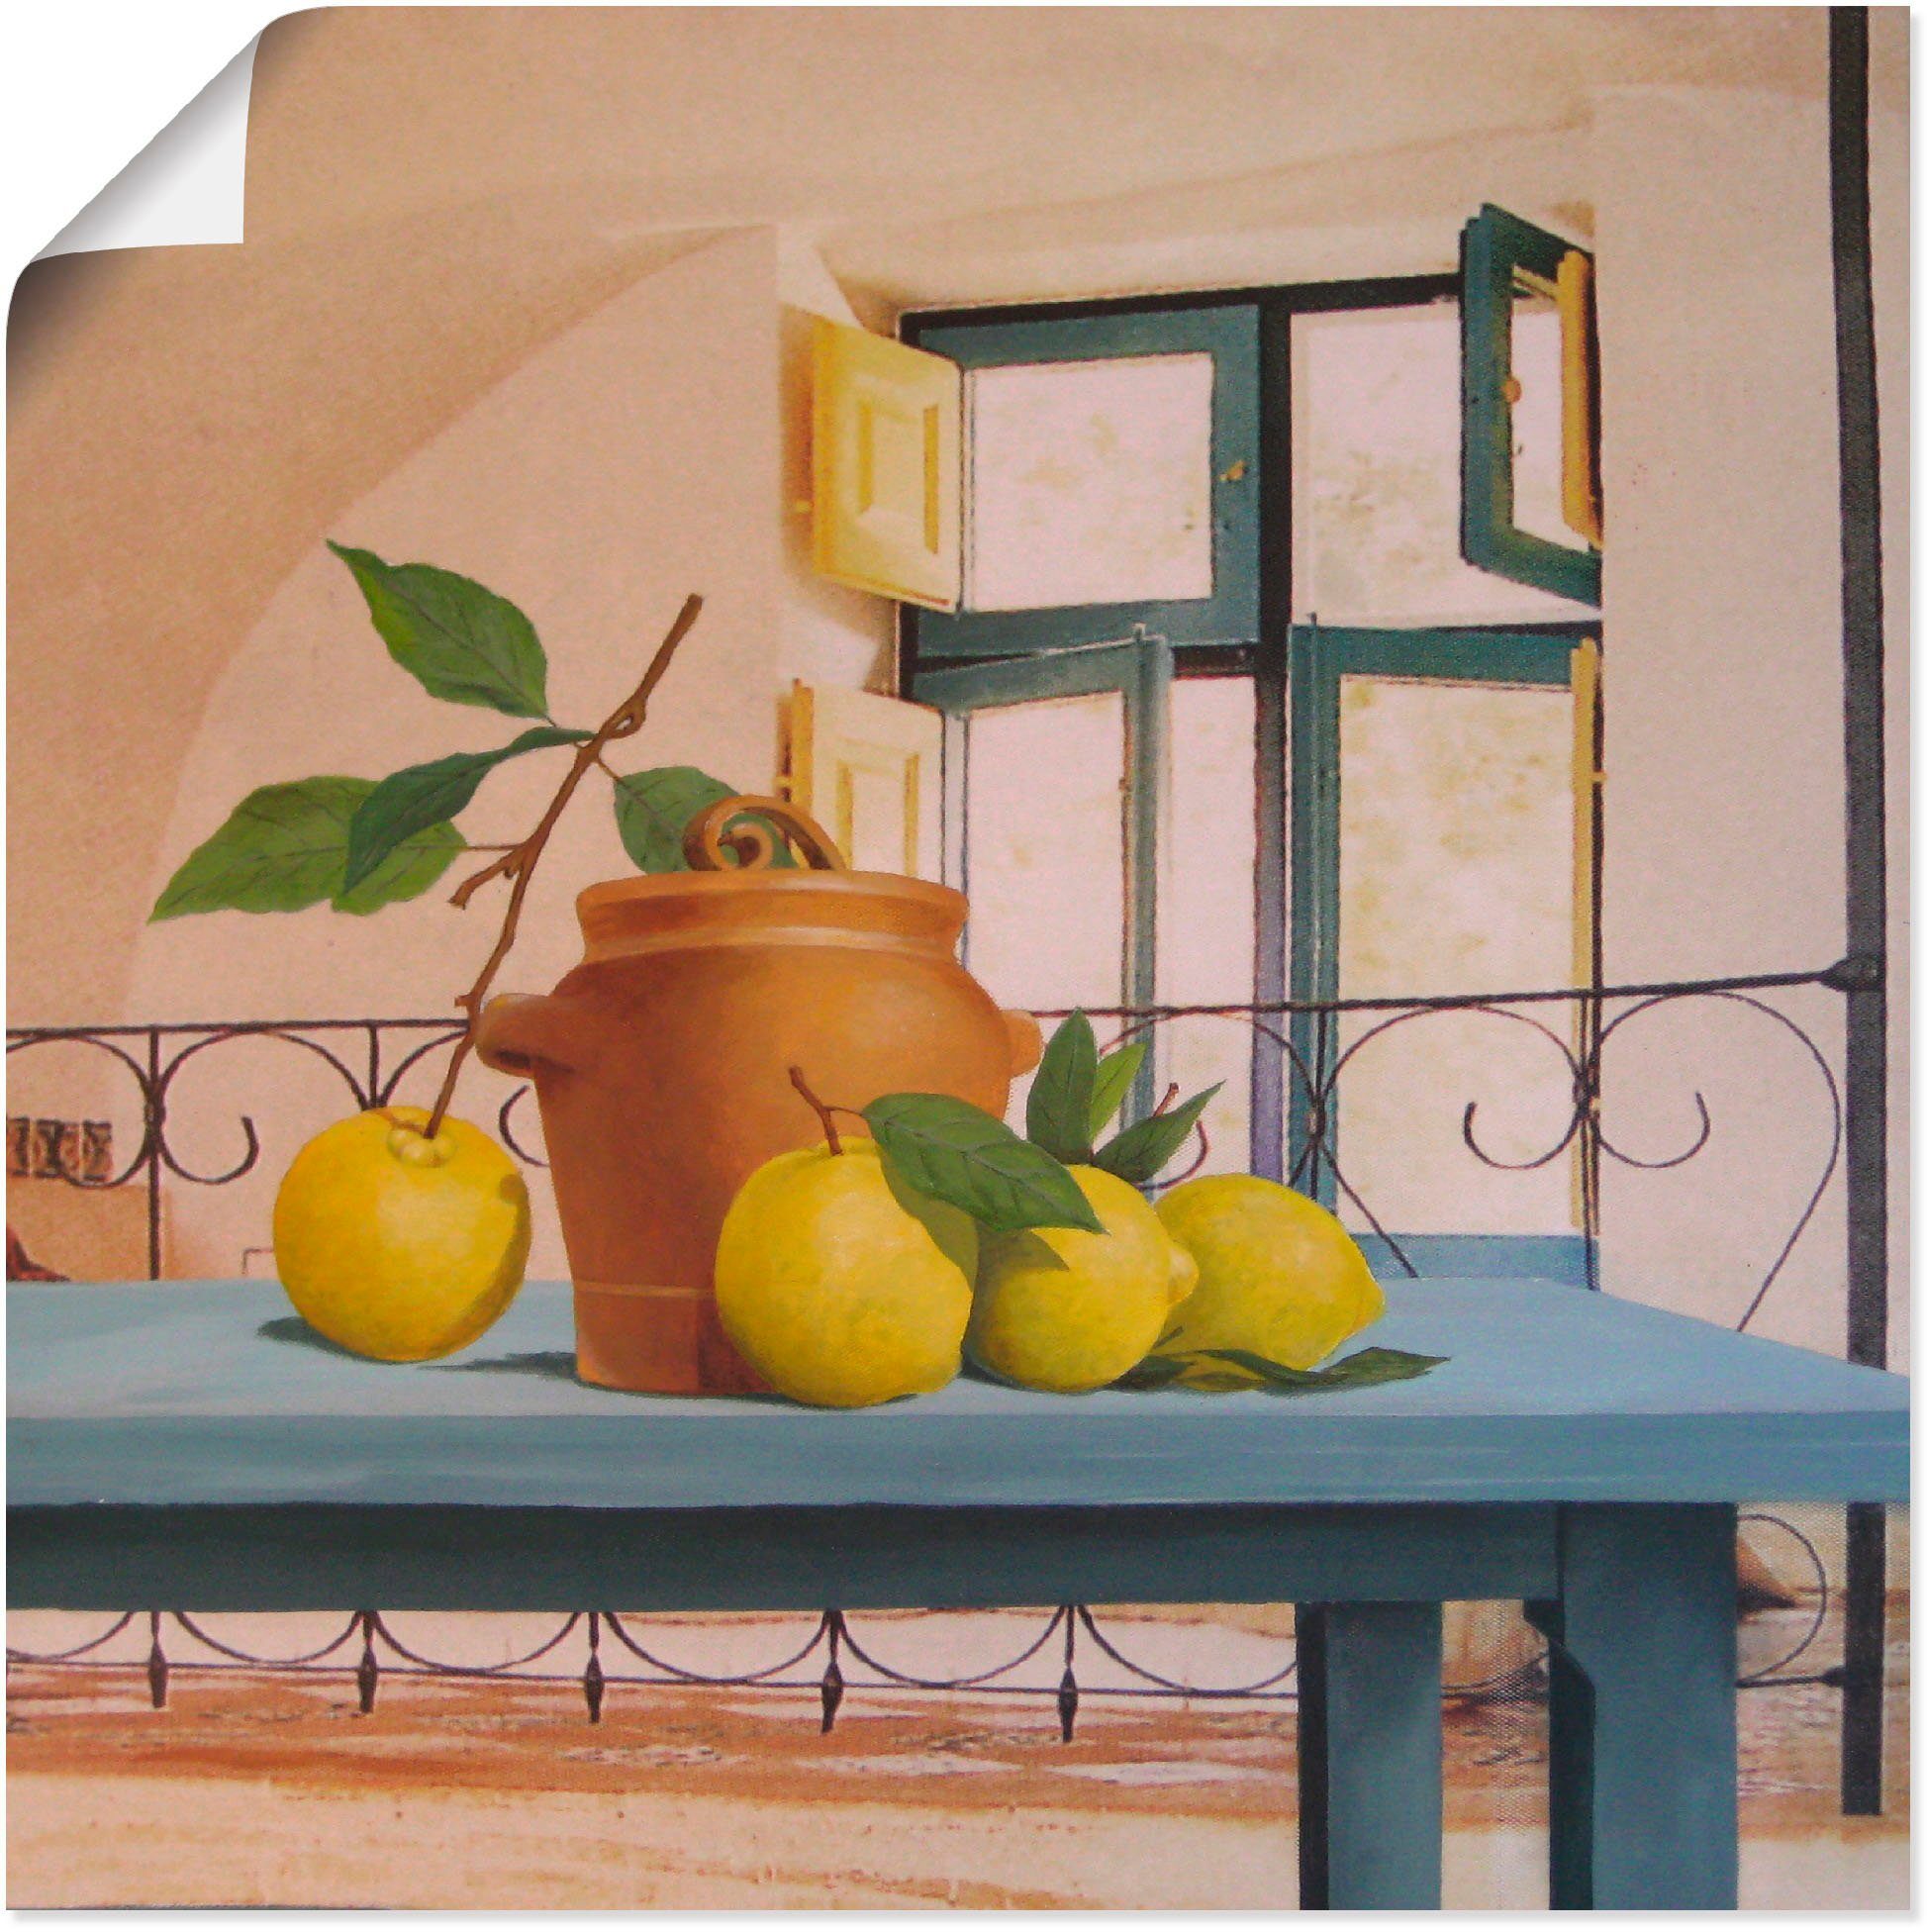 Artland Artprint Stilleven met citroenen in vele afmetingen & productsoorten -artprint op linnen, poster, muursticker / wandfolie ook geschikt voor de badkamer (1 stuk)